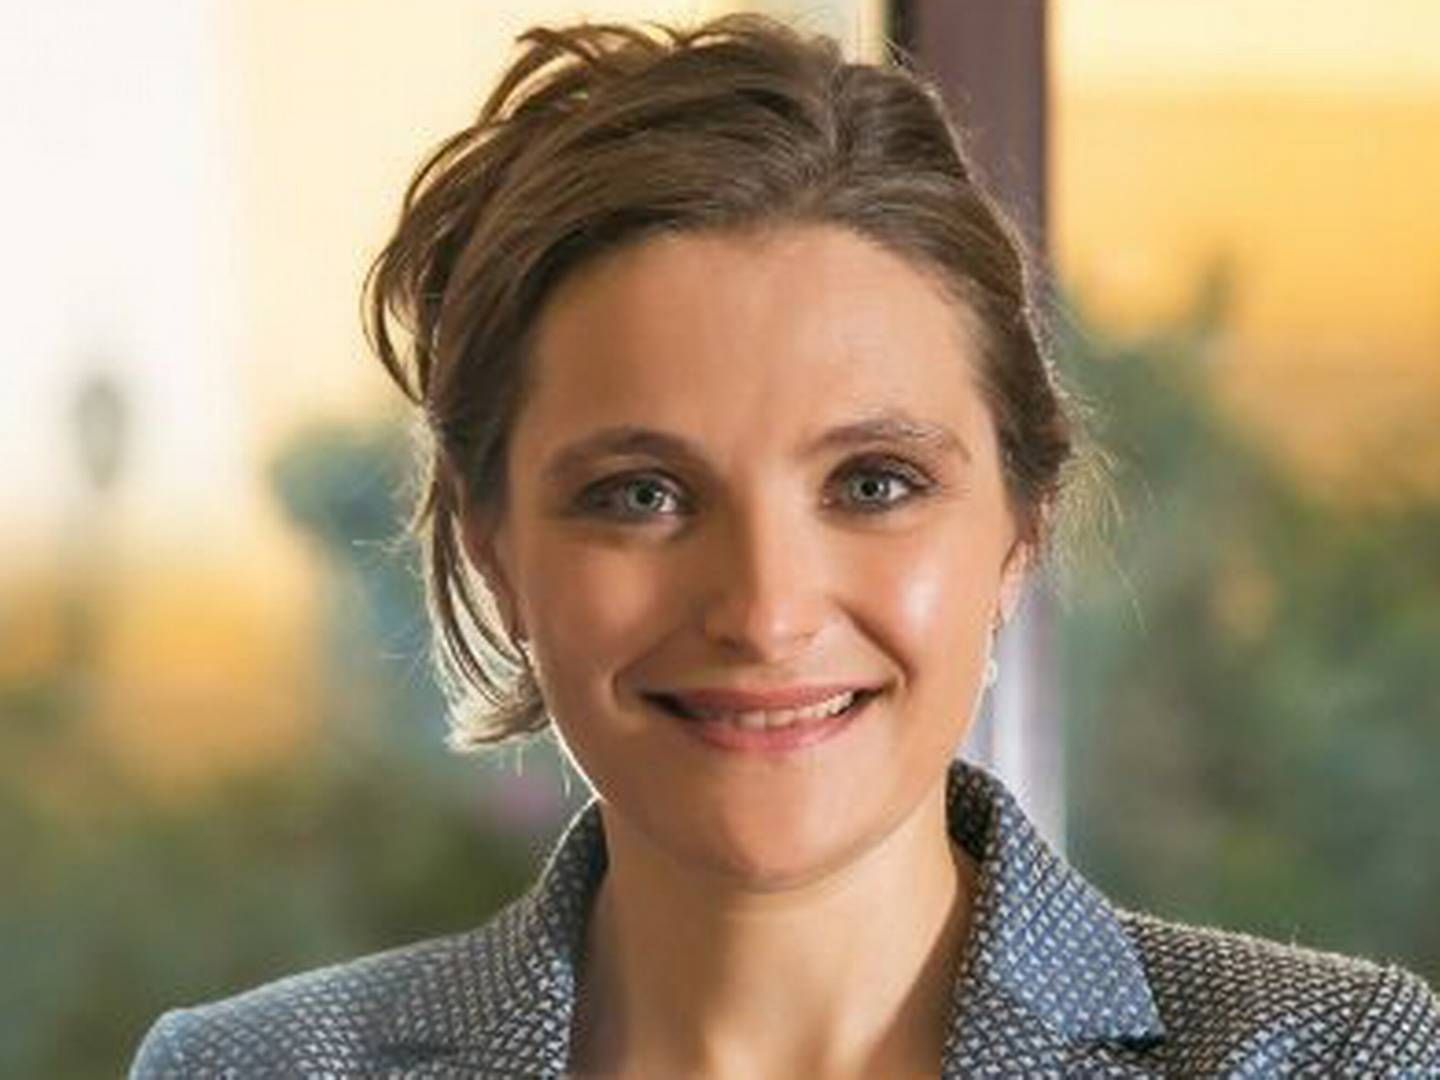 Merete Juhl, som i dag er Danmarks ambassadør i Jordan, Libanon og chargé d’affaires i Syrien med base i Beirut, bliver ny direktør i Landbrug & Fødevarer. | Foto: PR/Landbrug & Fødevarer